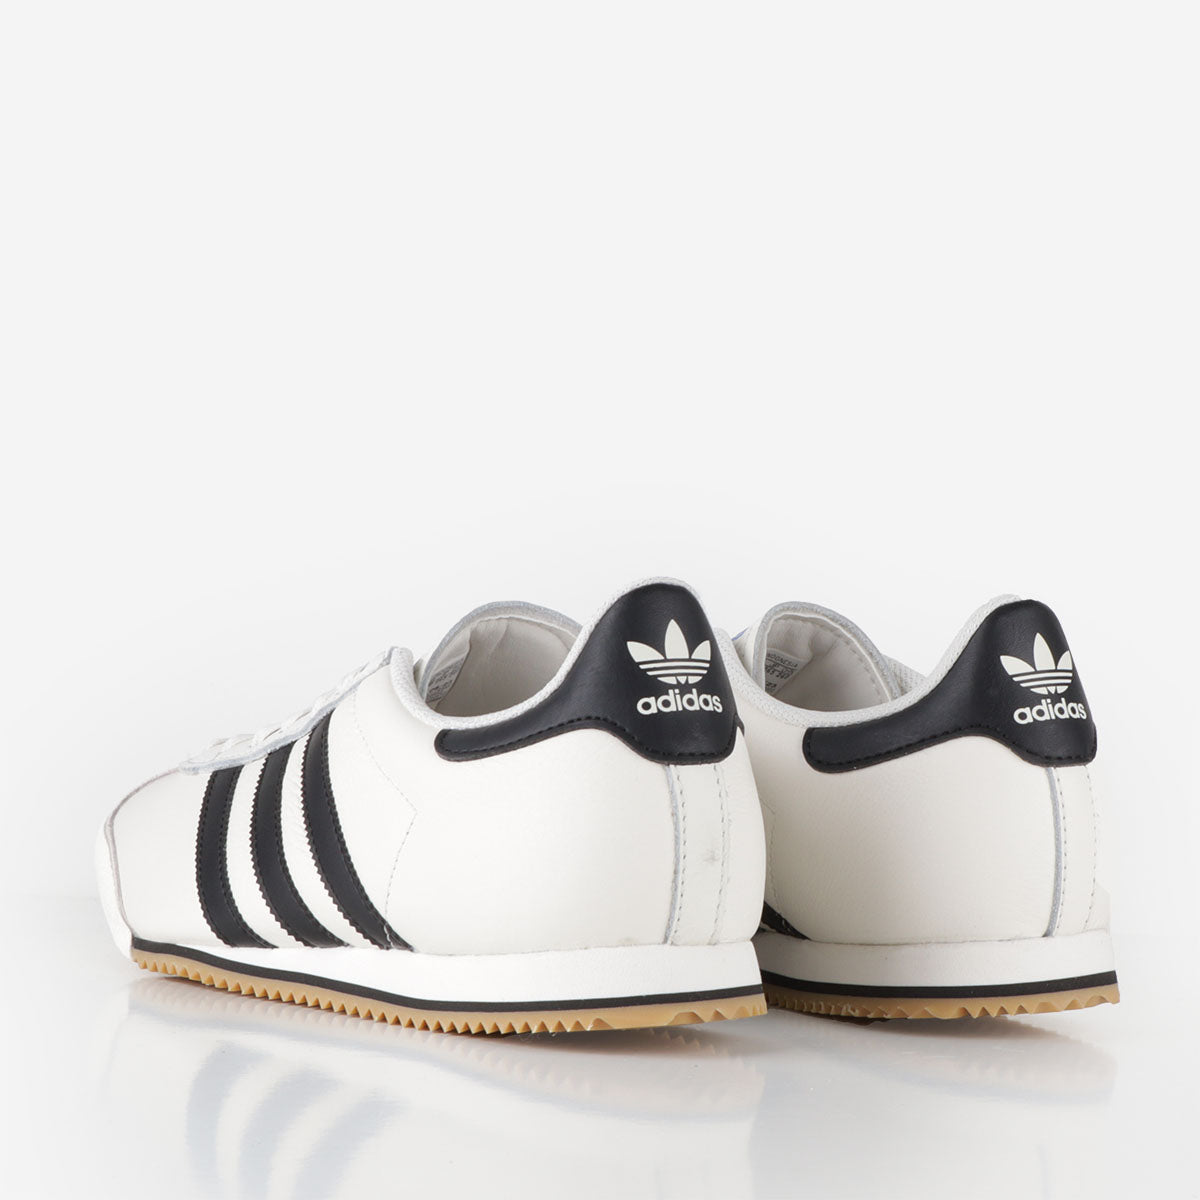 Adidas Originals Kick Shoes, Core White Core Black Gum 3, Detail Shot 3